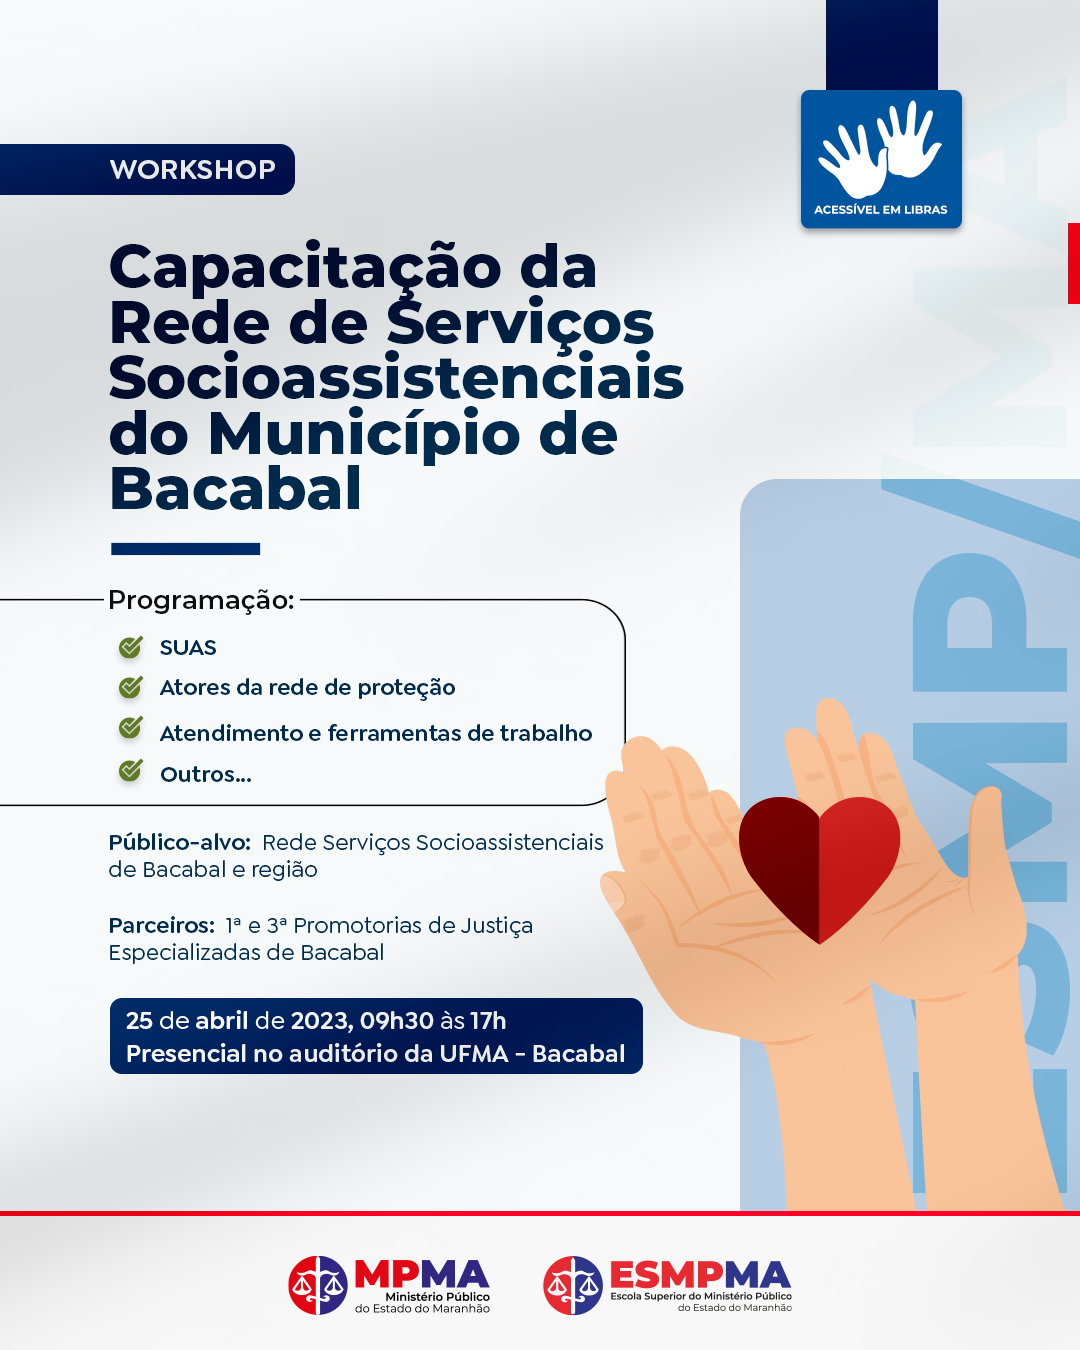 Capacitação da rede de serviços socioassistenciais do município de Bacabal